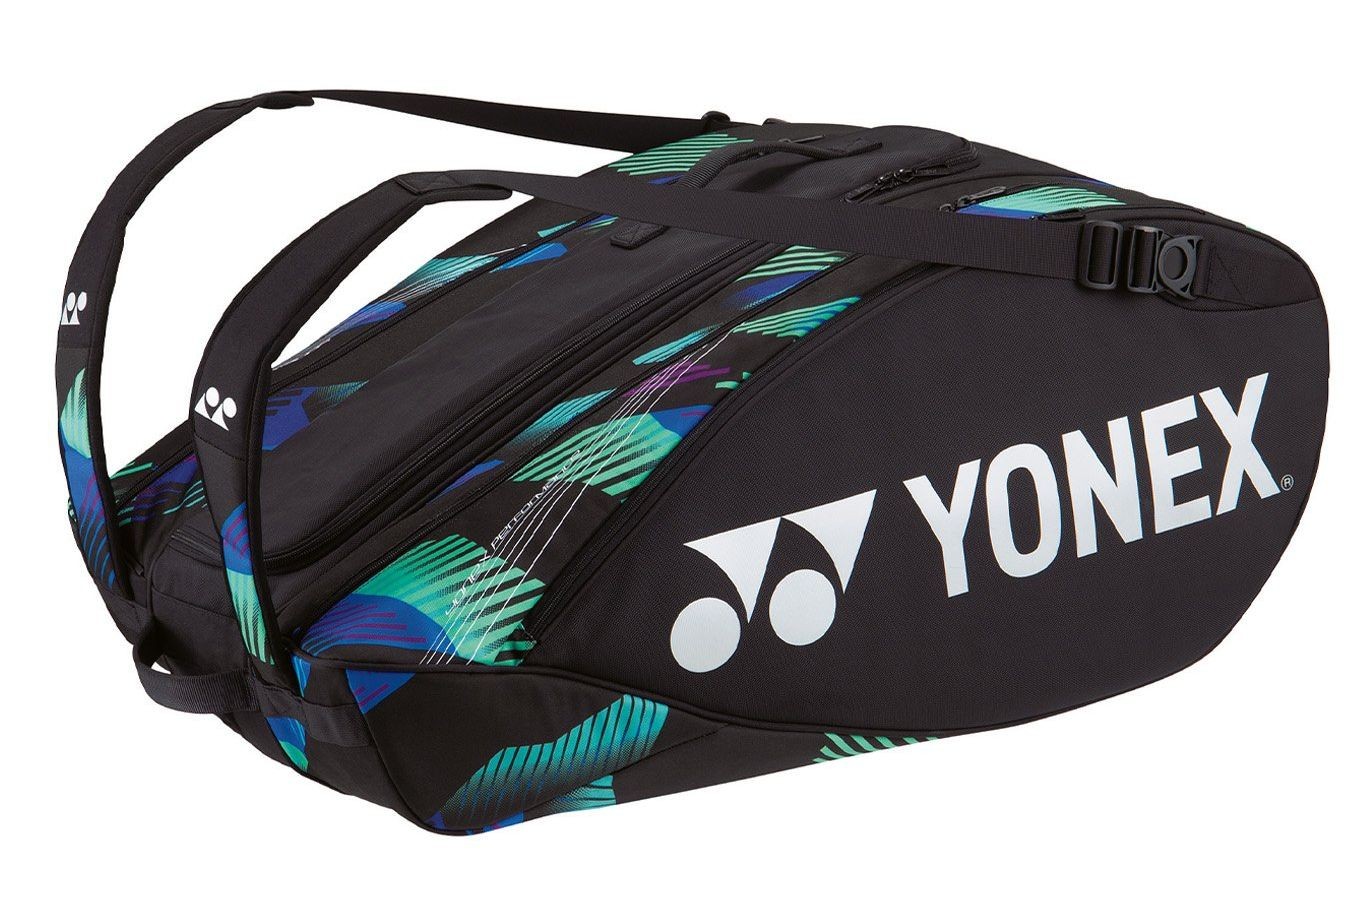 Теннисная сумка Yonex Pro Racquet Bag 9 Pack green/purple